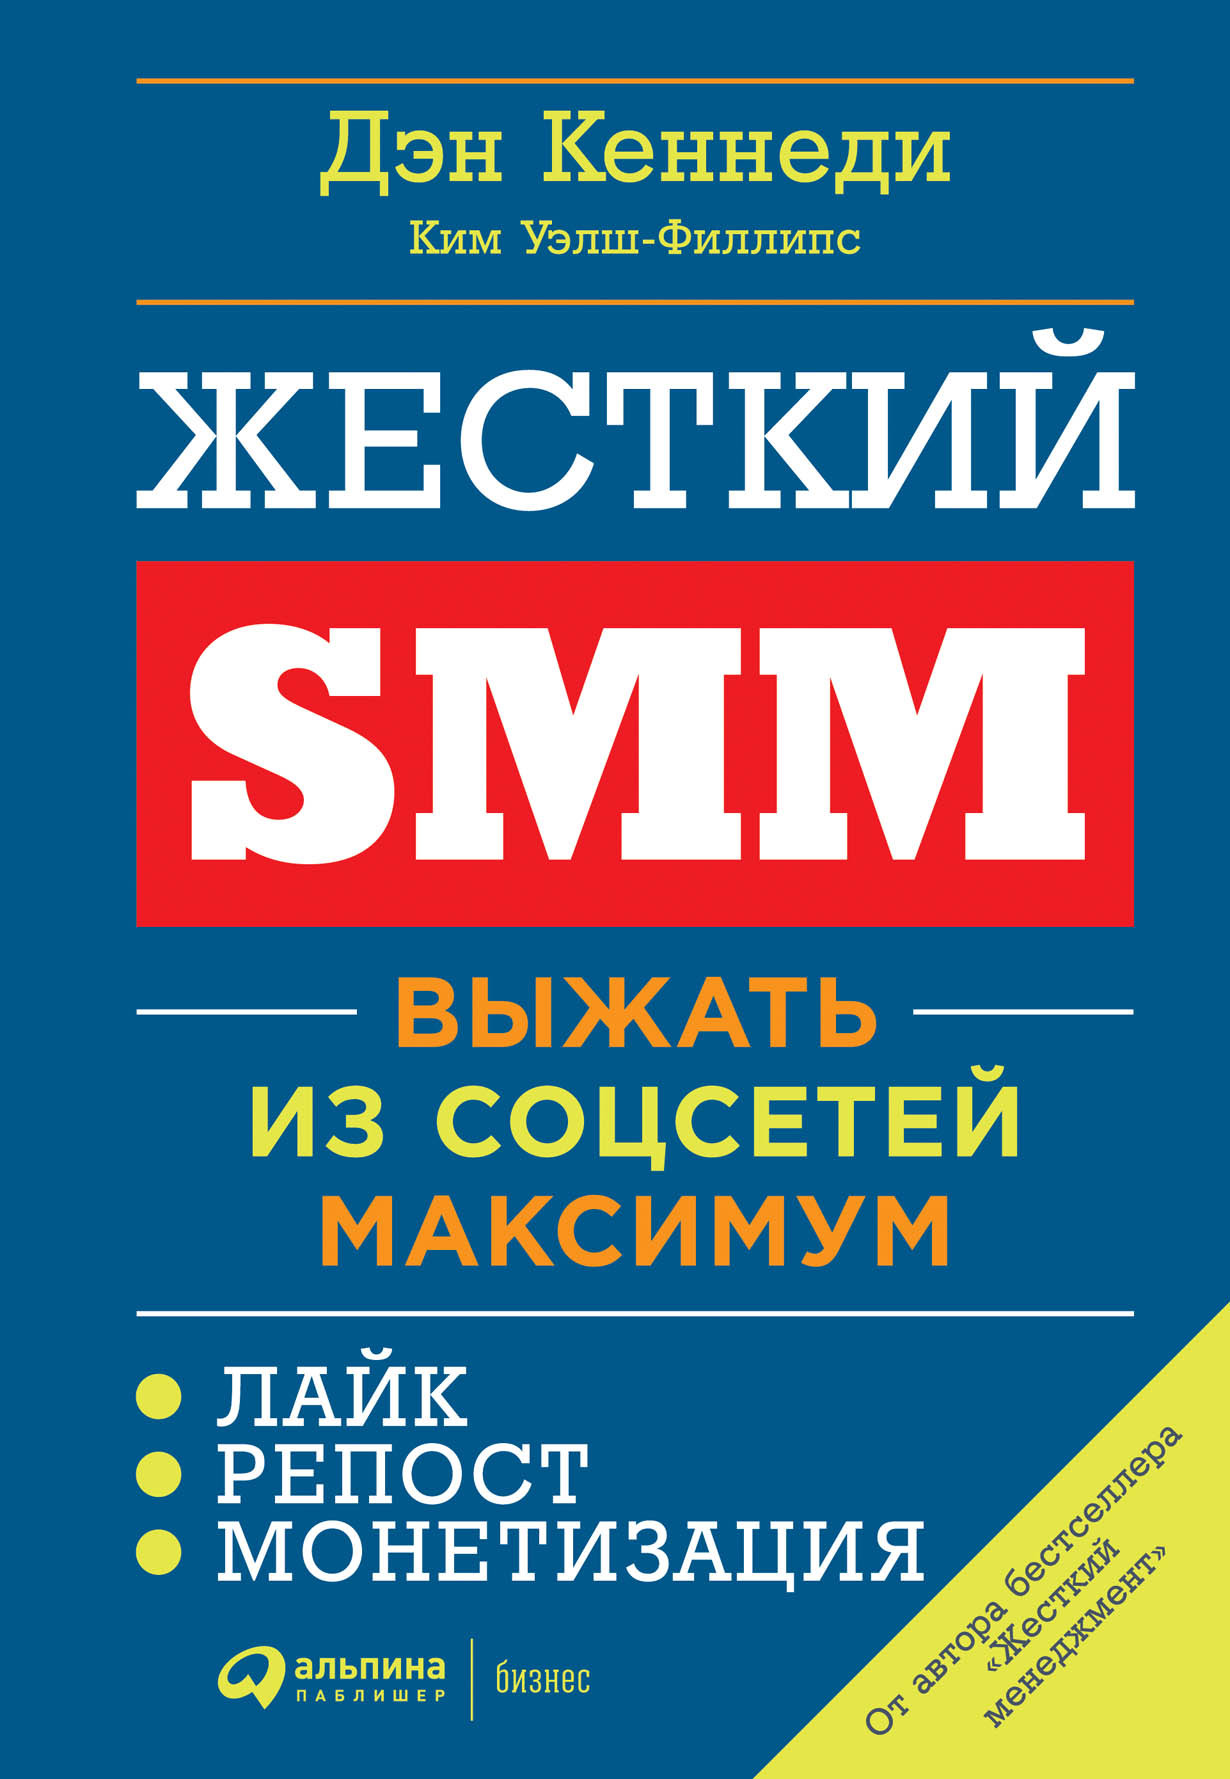 Жёсткий SMM обложка.